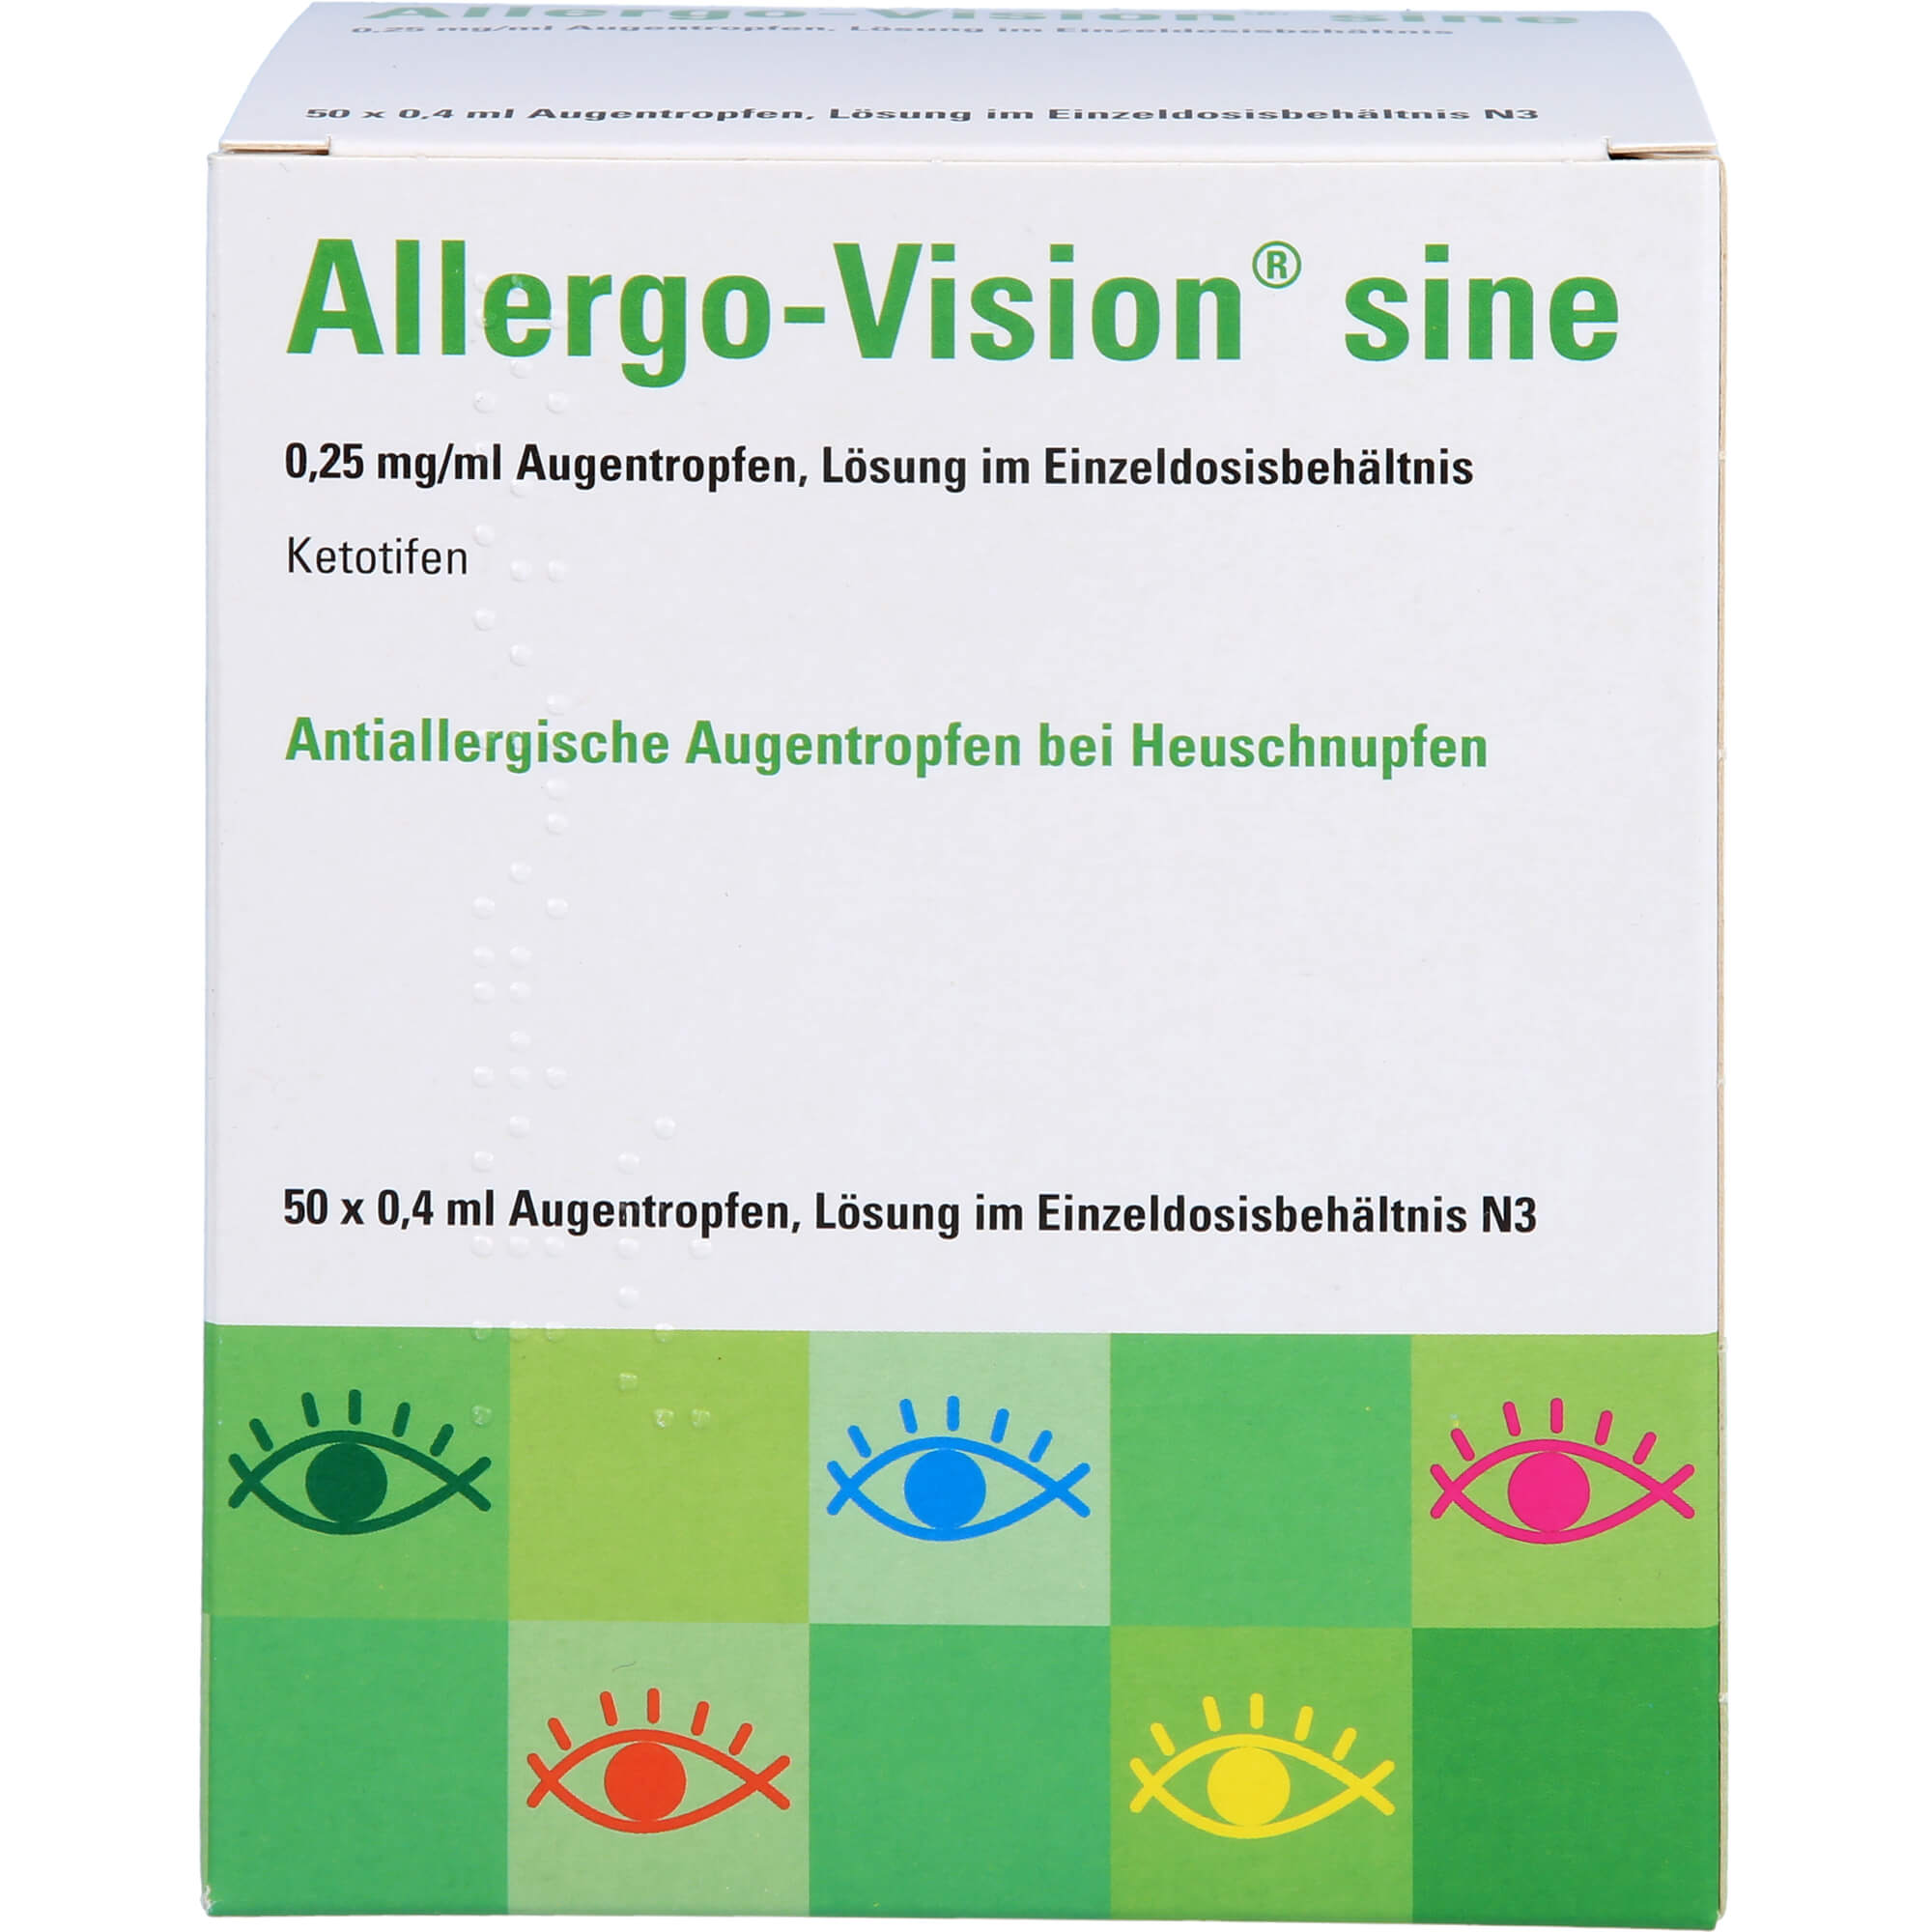 ALLERGO-VISION sine 0,25 mg/ml AT in Einzeldosen